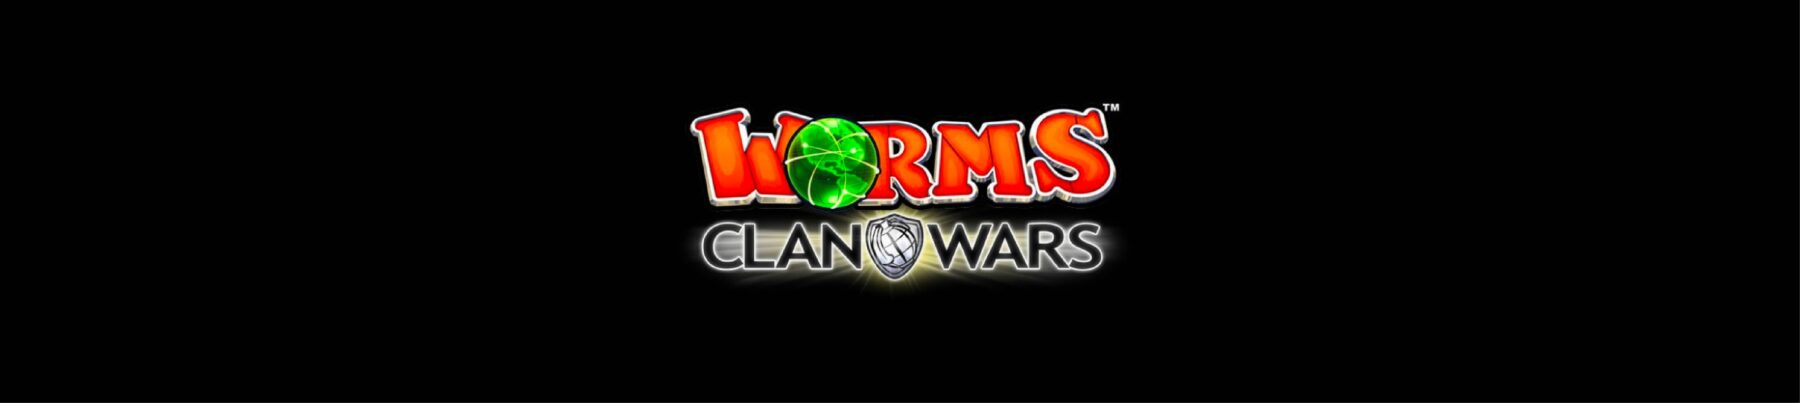 worms revolution clan wars